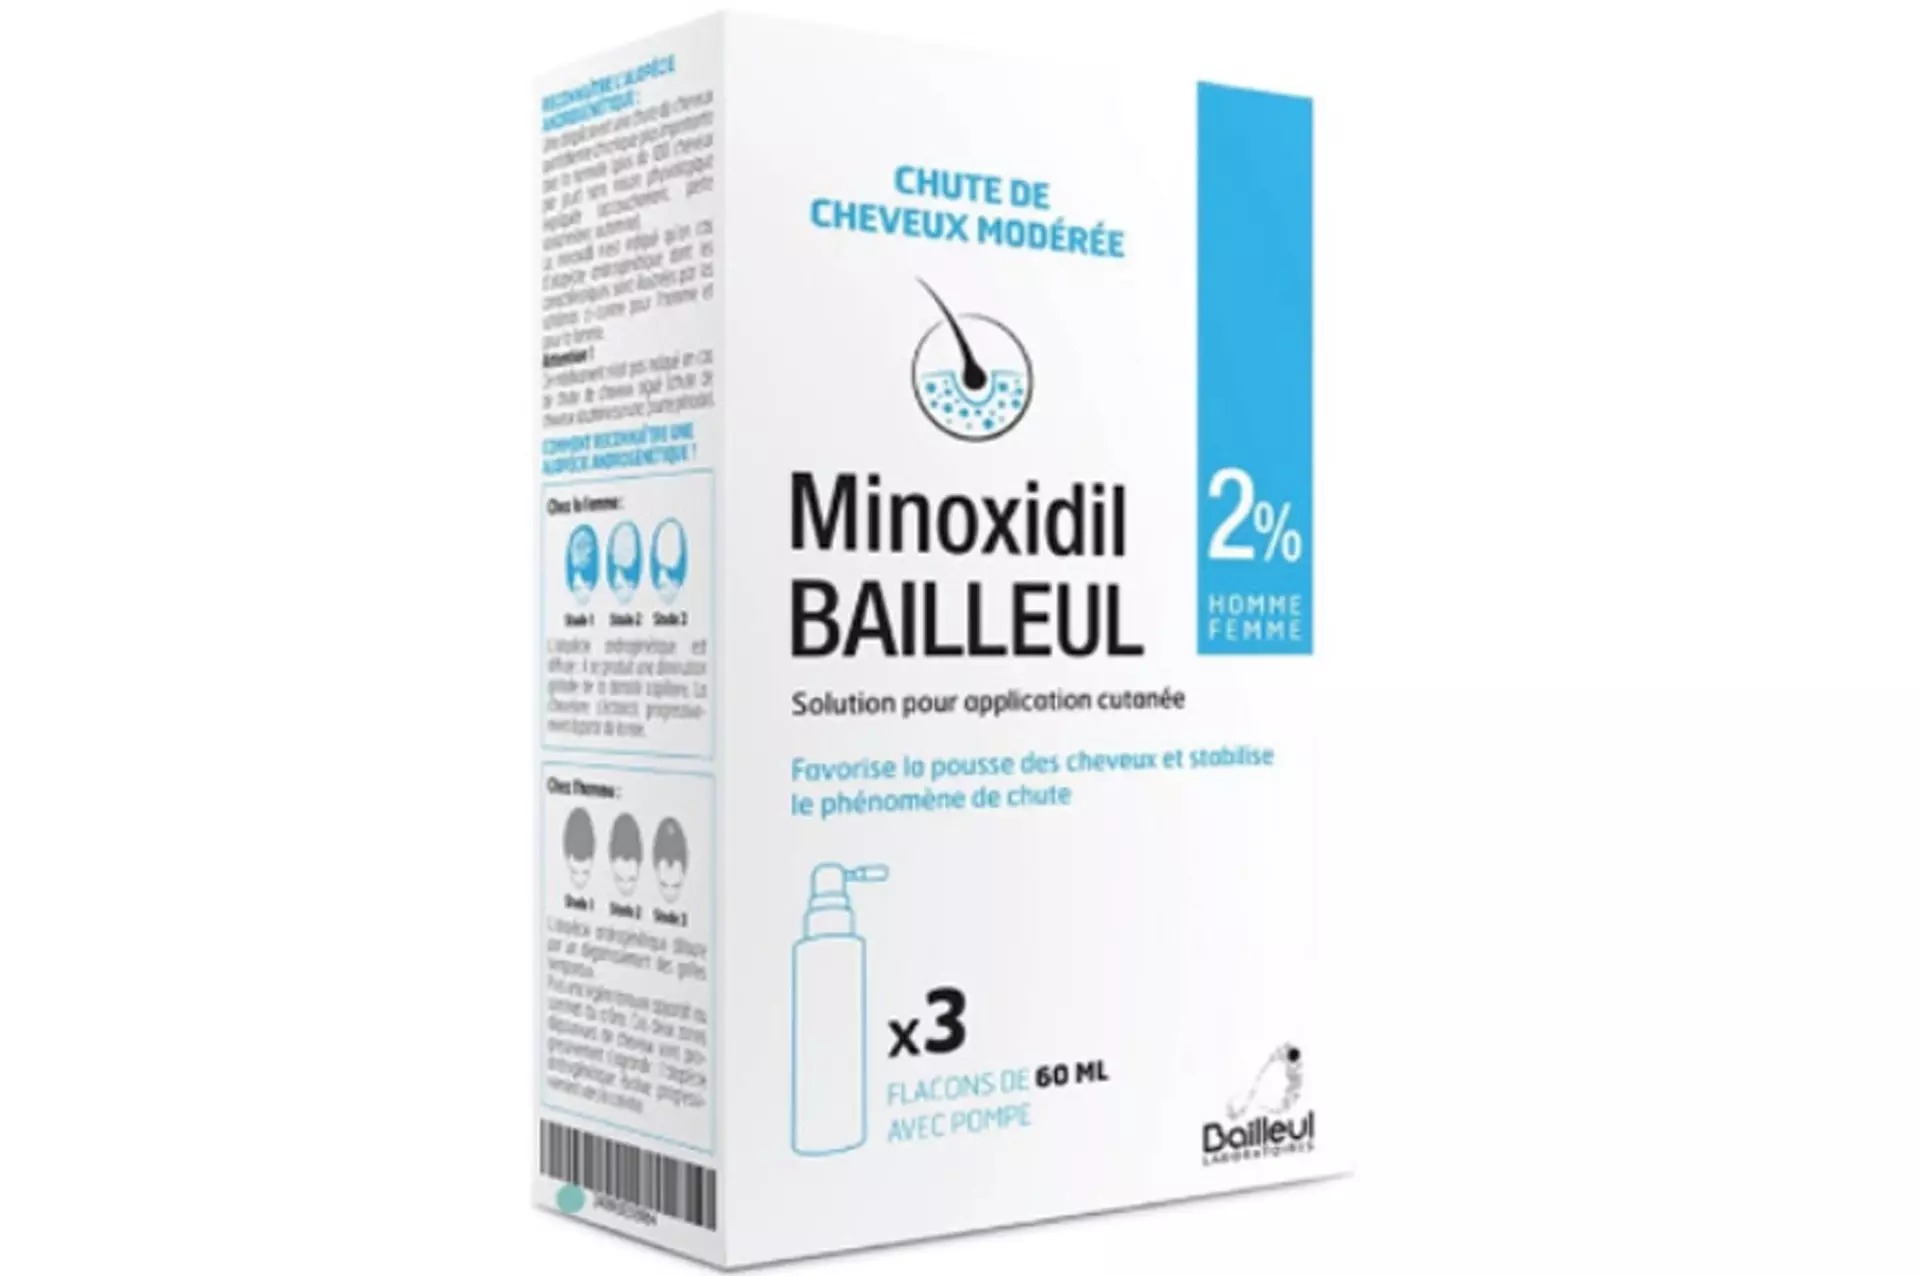 Minoxidil Bailleul 2% chute de cheveux femmes